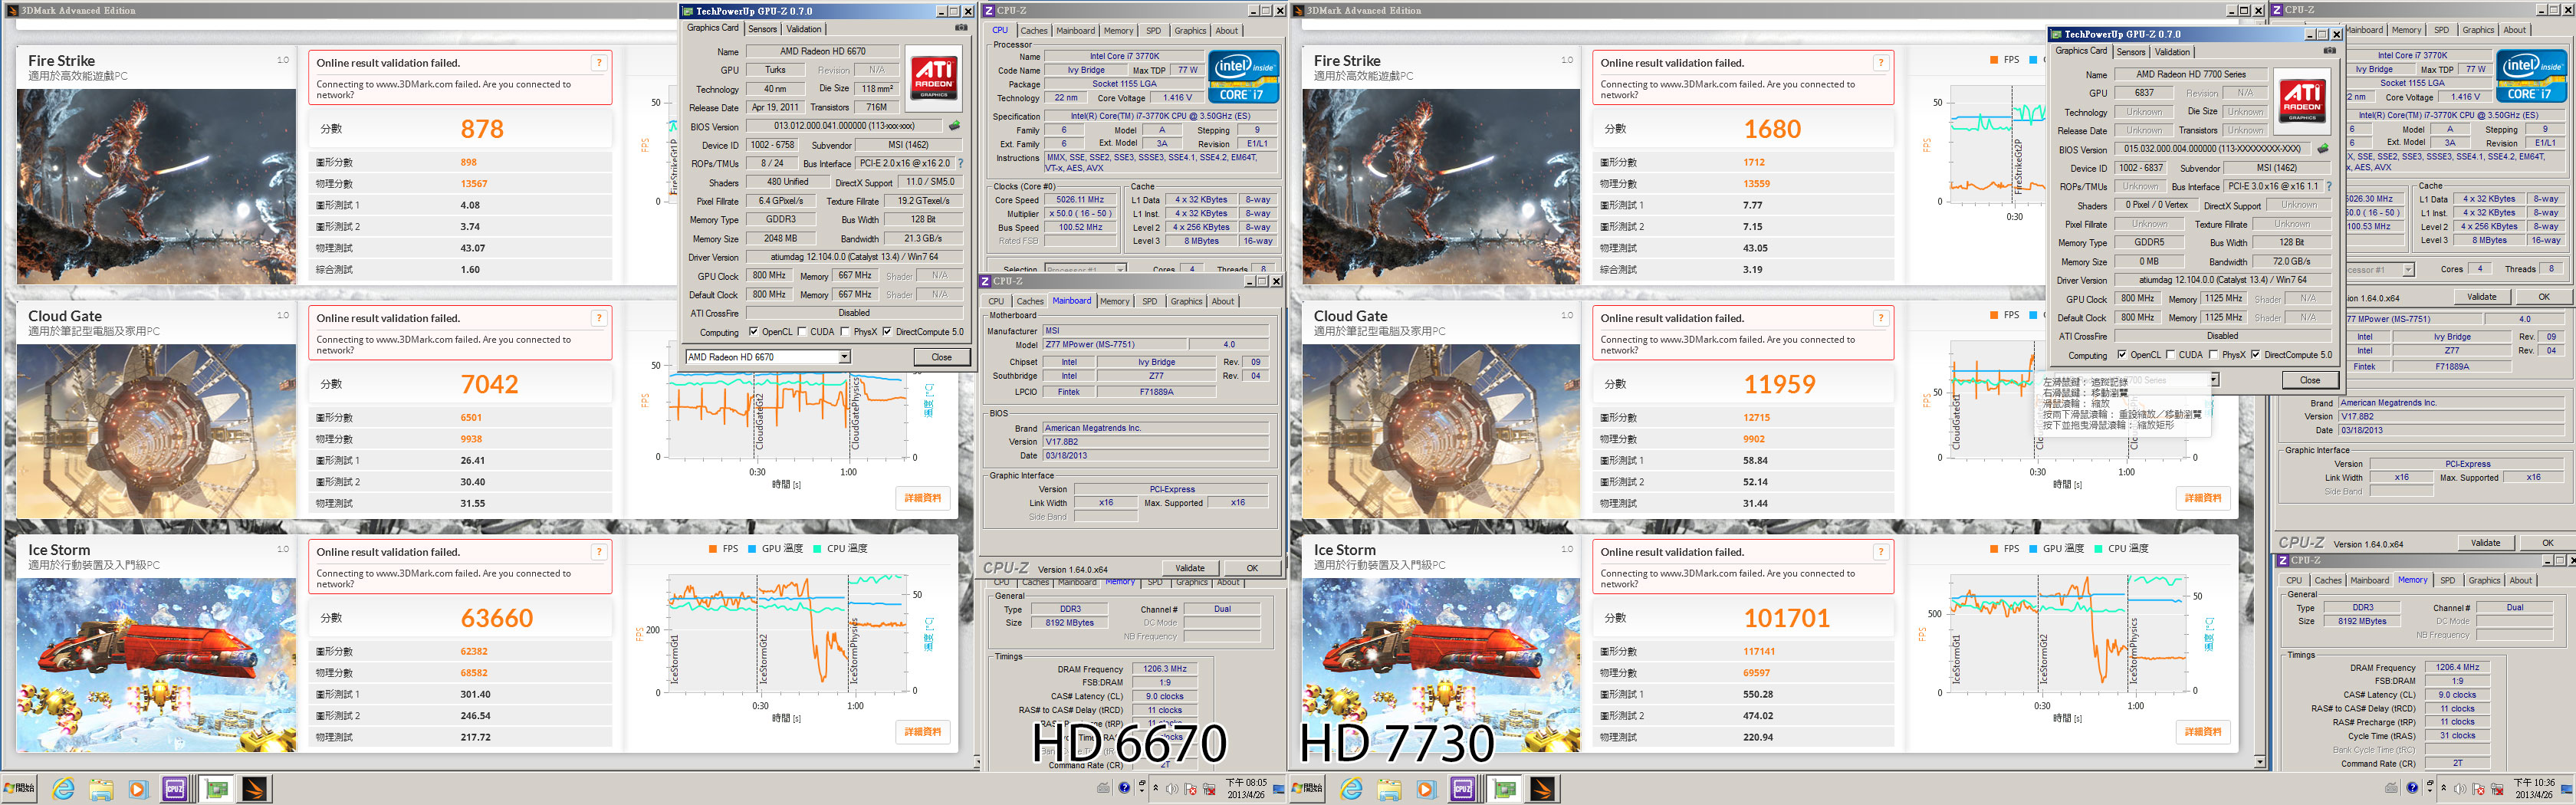 Immagine pubblicata in relazione al seguente contenuto: Foto e benchmark della video card Radeon HD 7730 di MSI | Nome immagine: news19437_MSI-Radeon-HD-7730_7.jpg